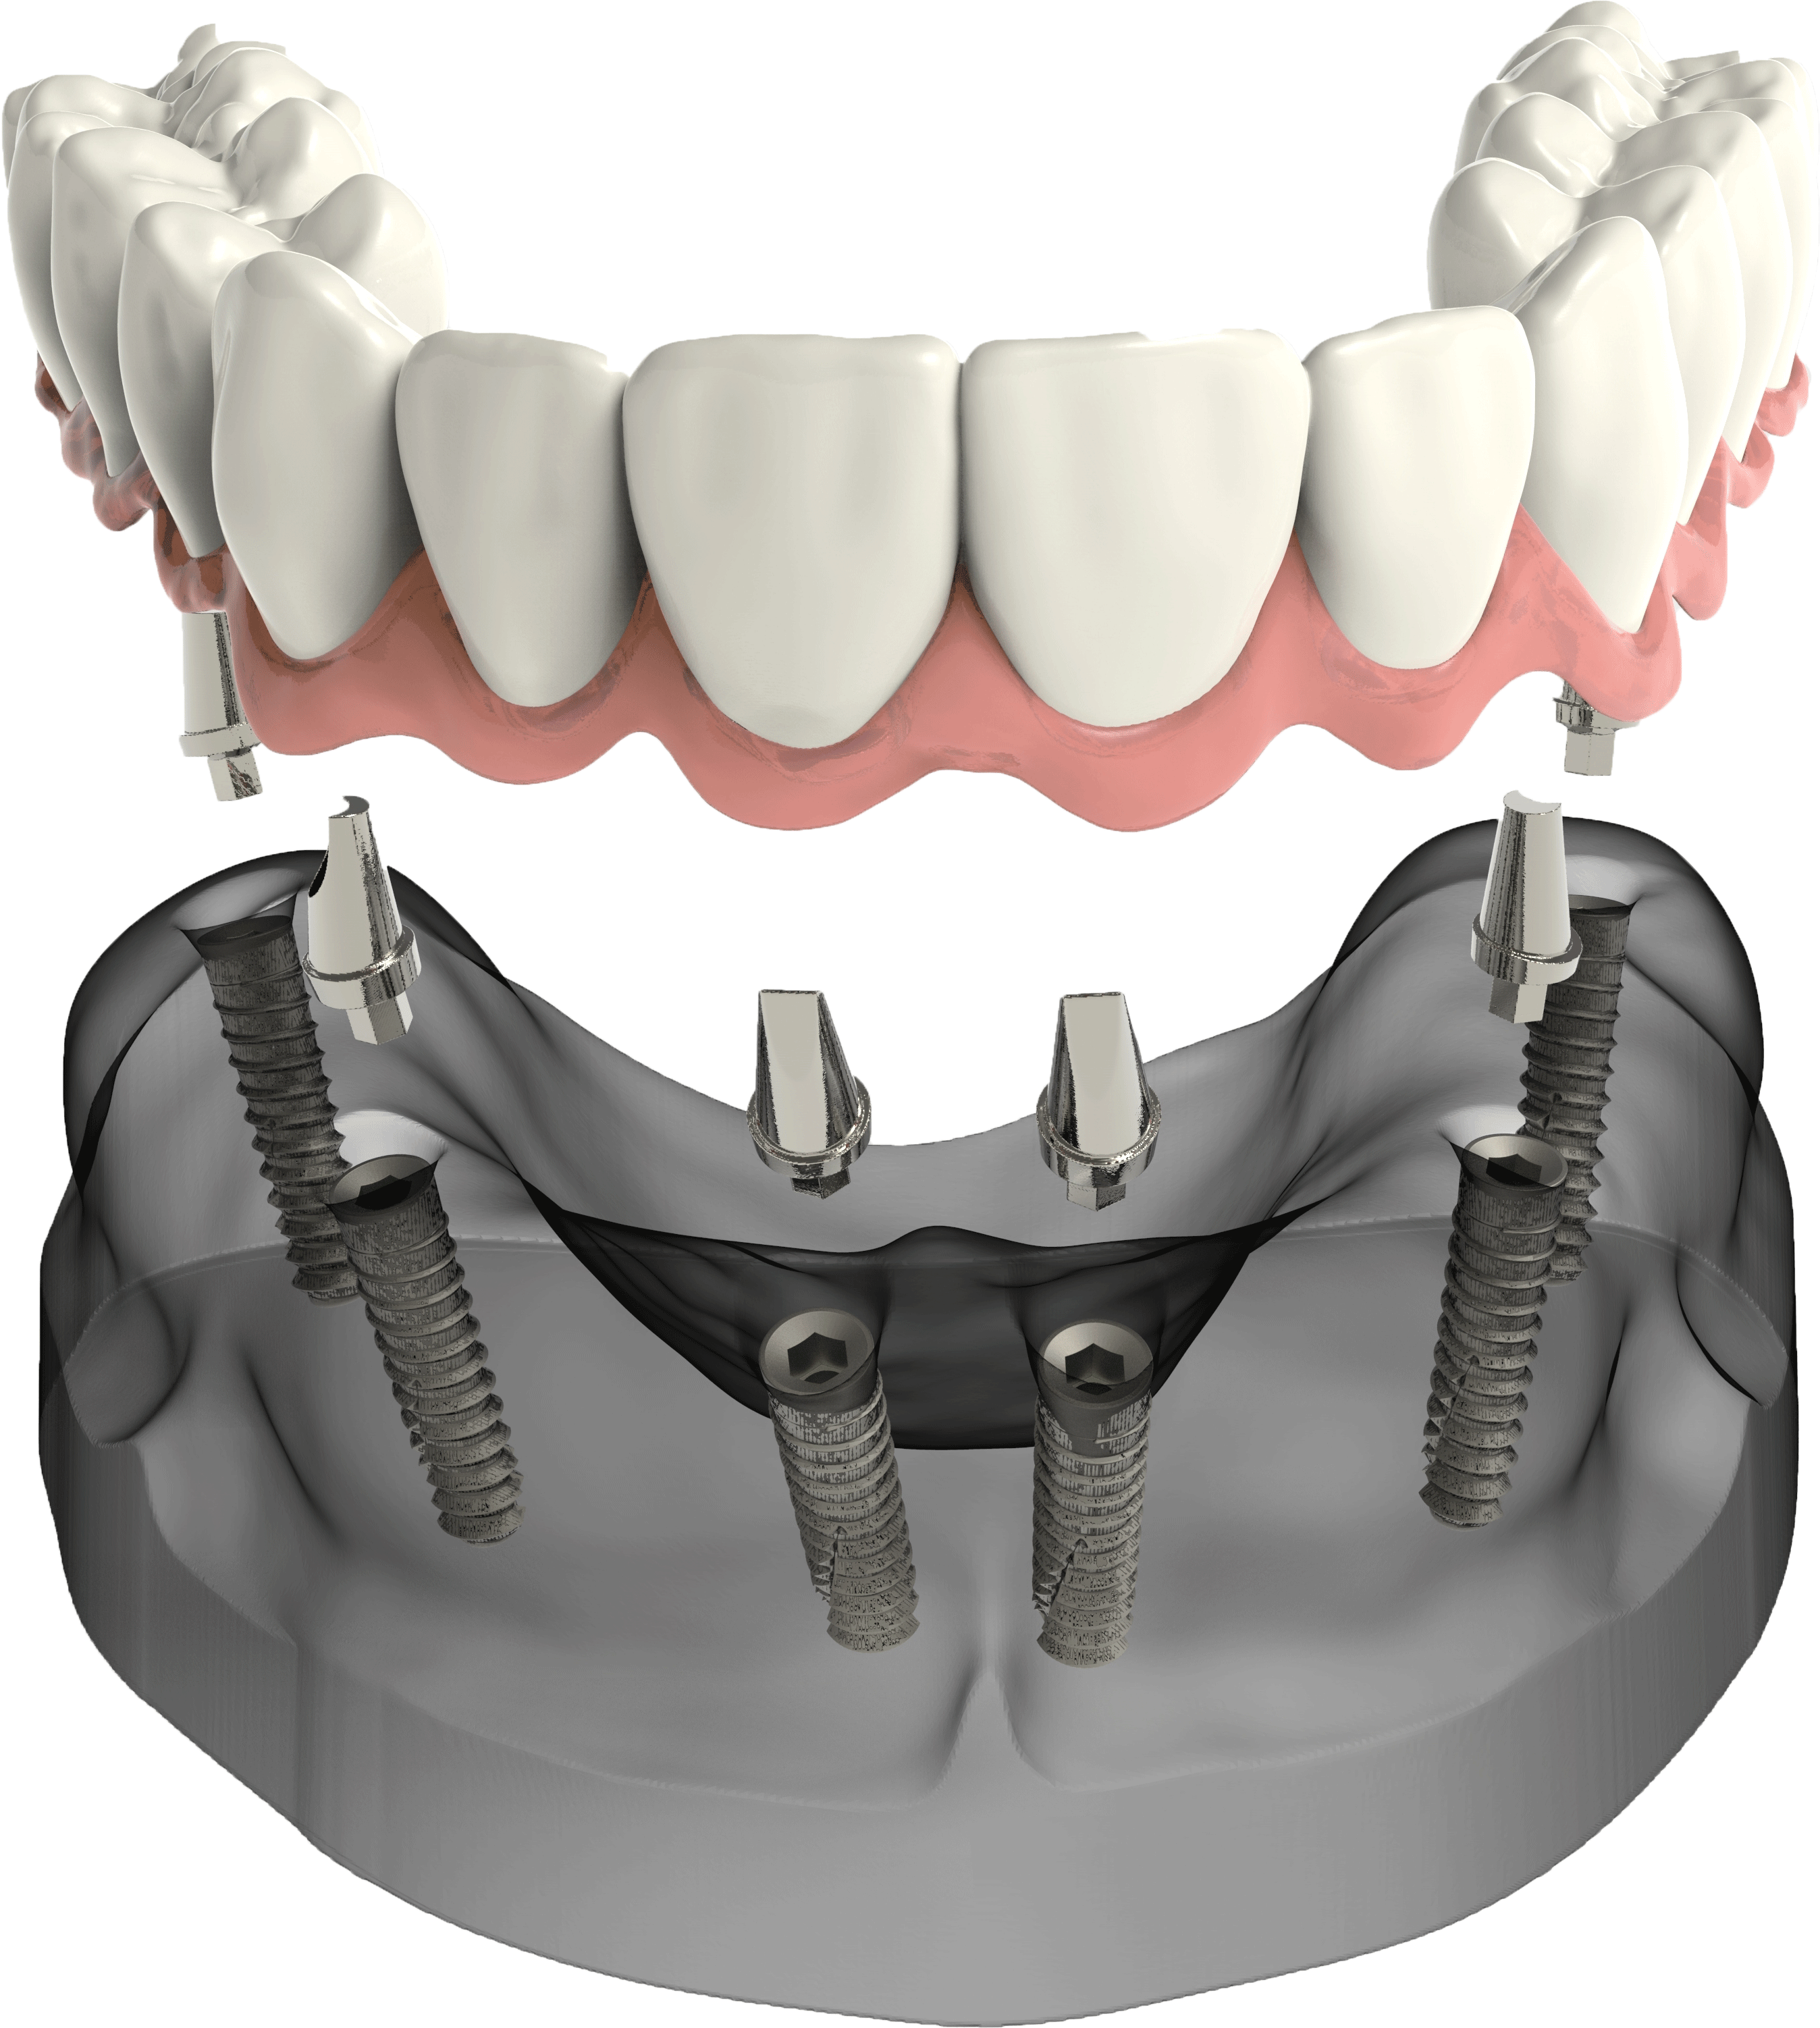 Имплантация зубов all on 6. Имплантация зубов all on 4. Имплантологическая кассета Nobel полный набор для all on 4. Мостовидный протез на 6 имплантах.